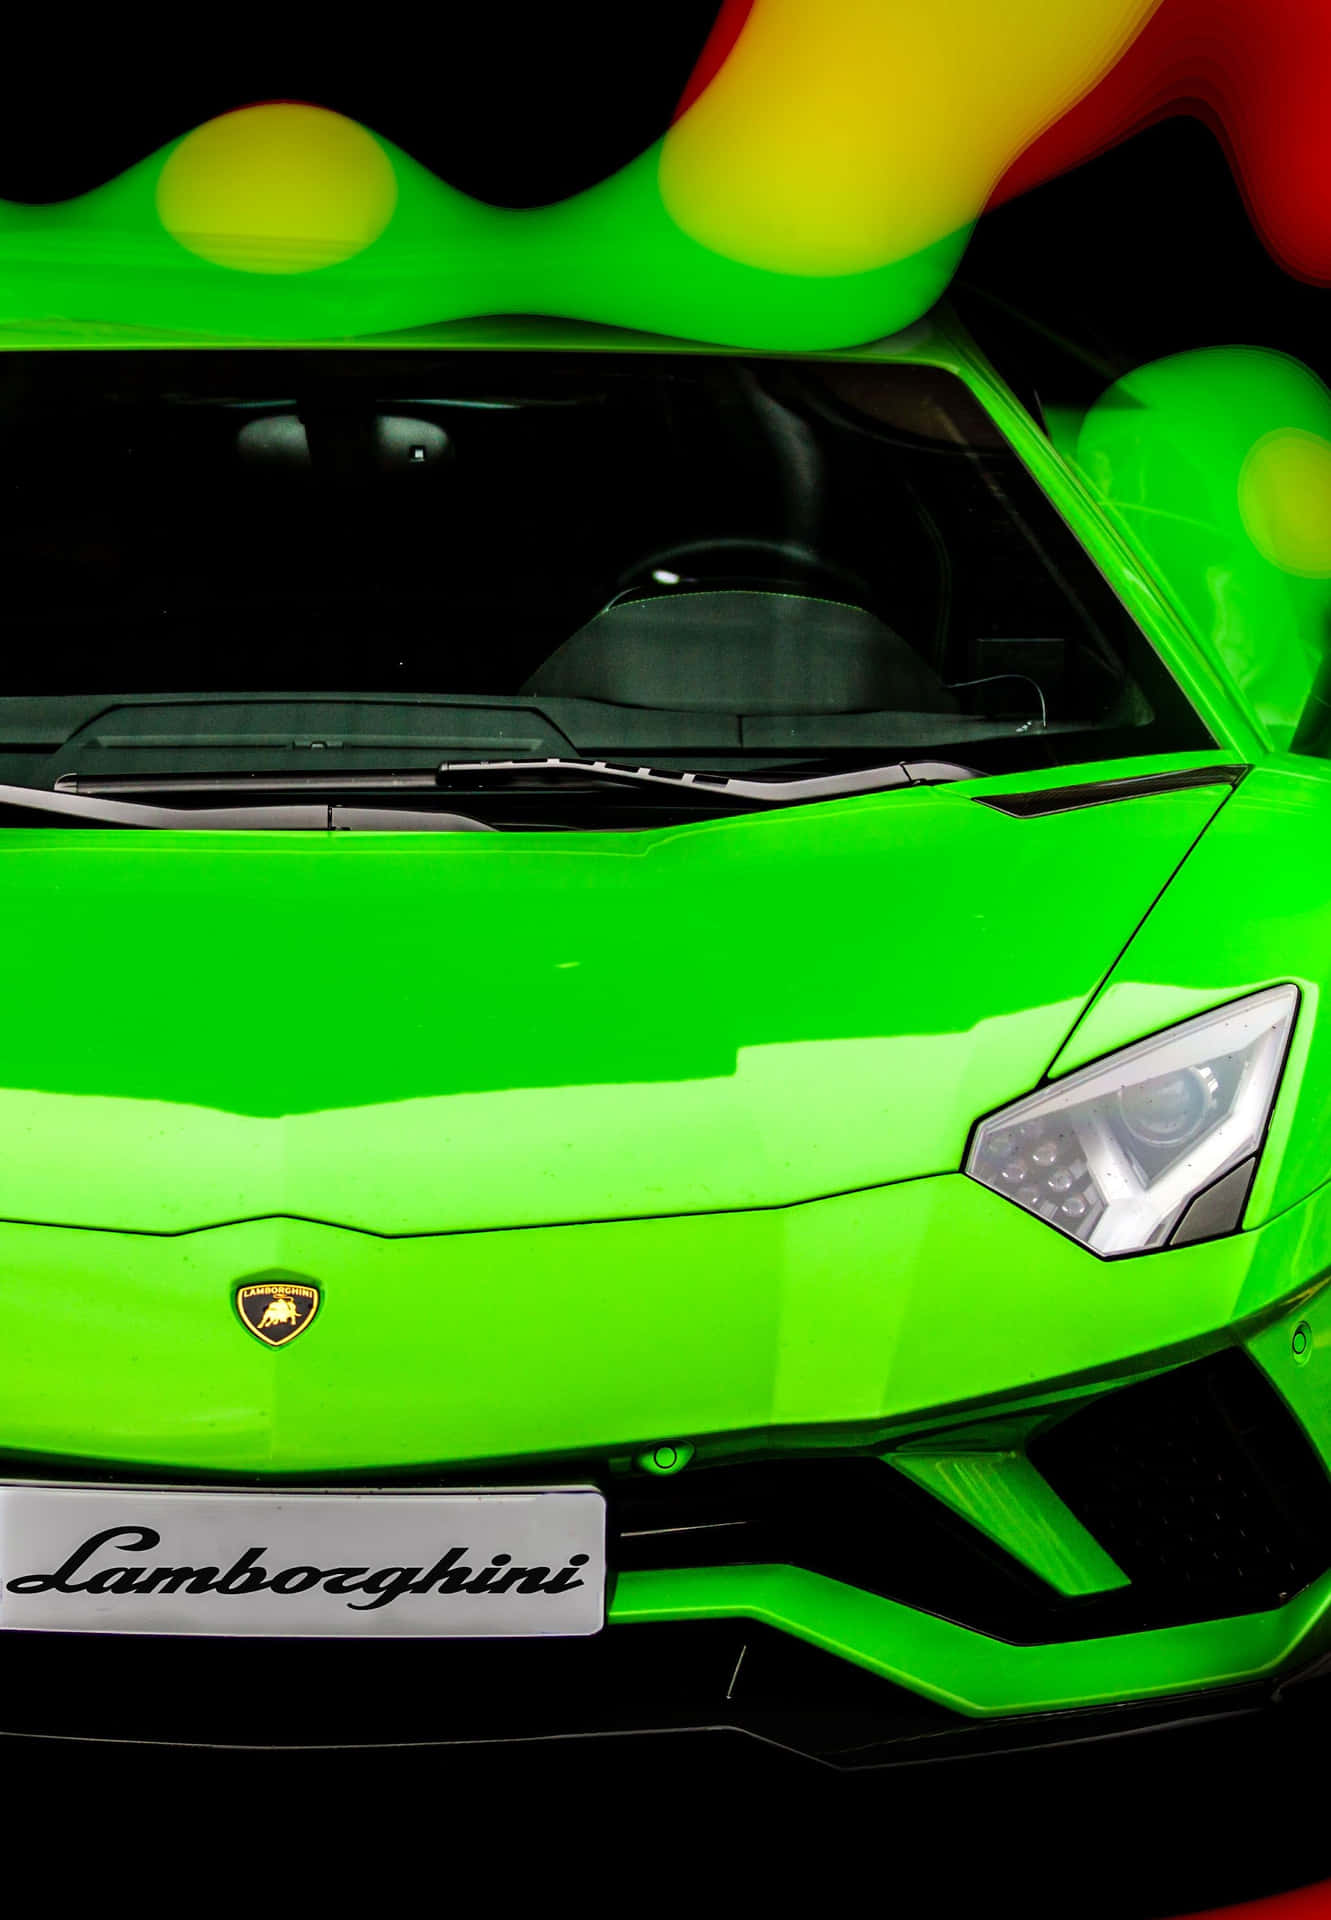 Erlebeeinen Adrenalinstoß In Einem Grünen Lamborghini. Wallpaper